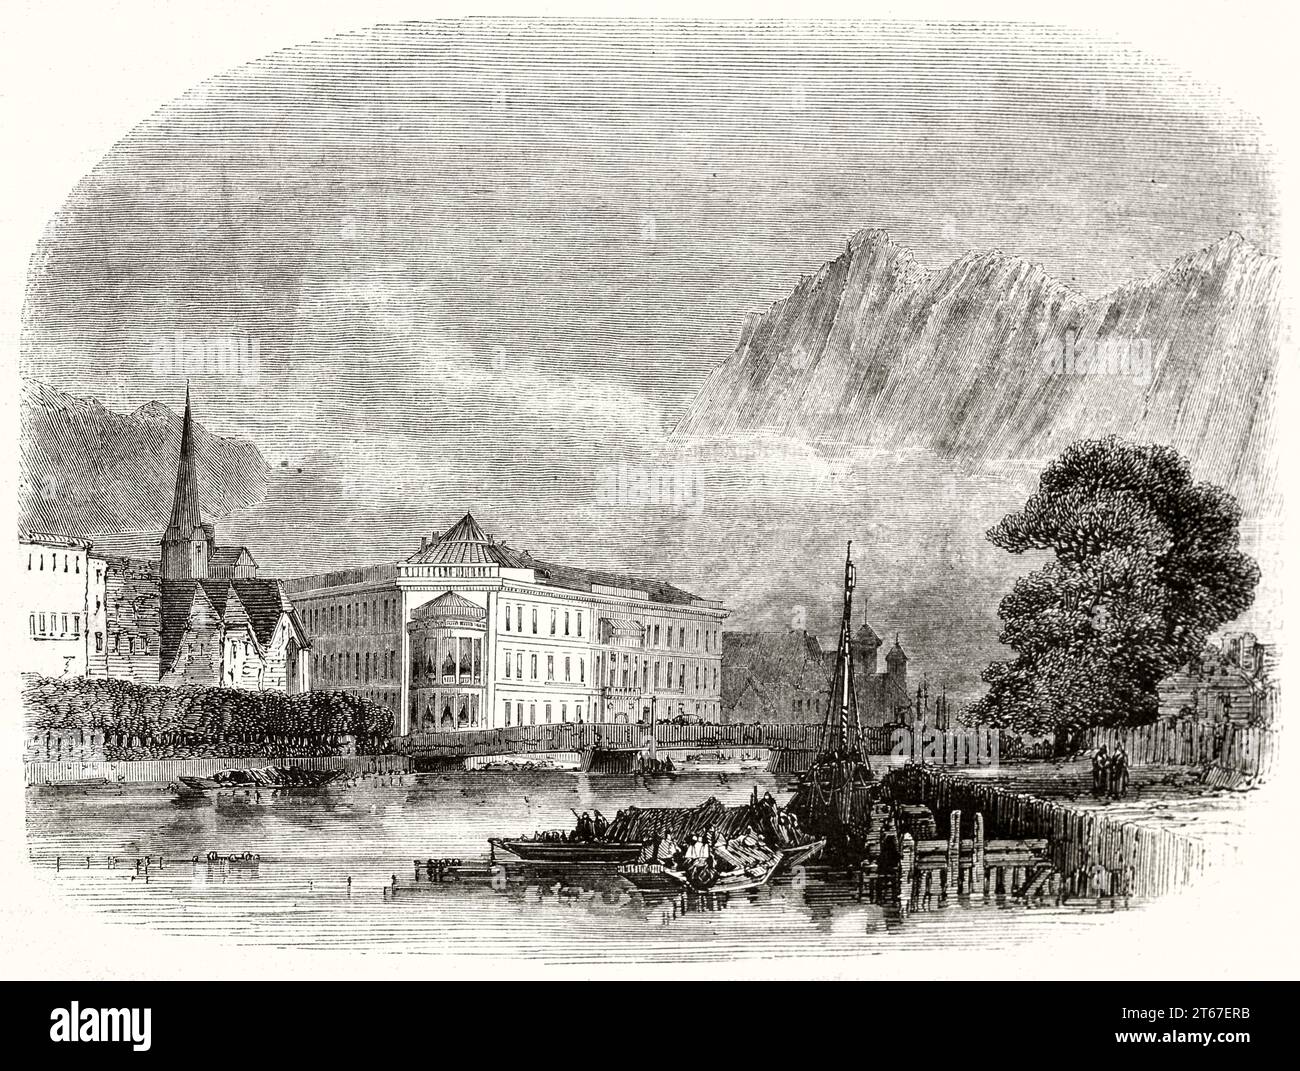 Vue ancienne de l'hôtel Palachini, Ischell, Autriche. Par Grandsire, publ. Sur magasin pittoresque, Paris, 1851 Banque D'Images